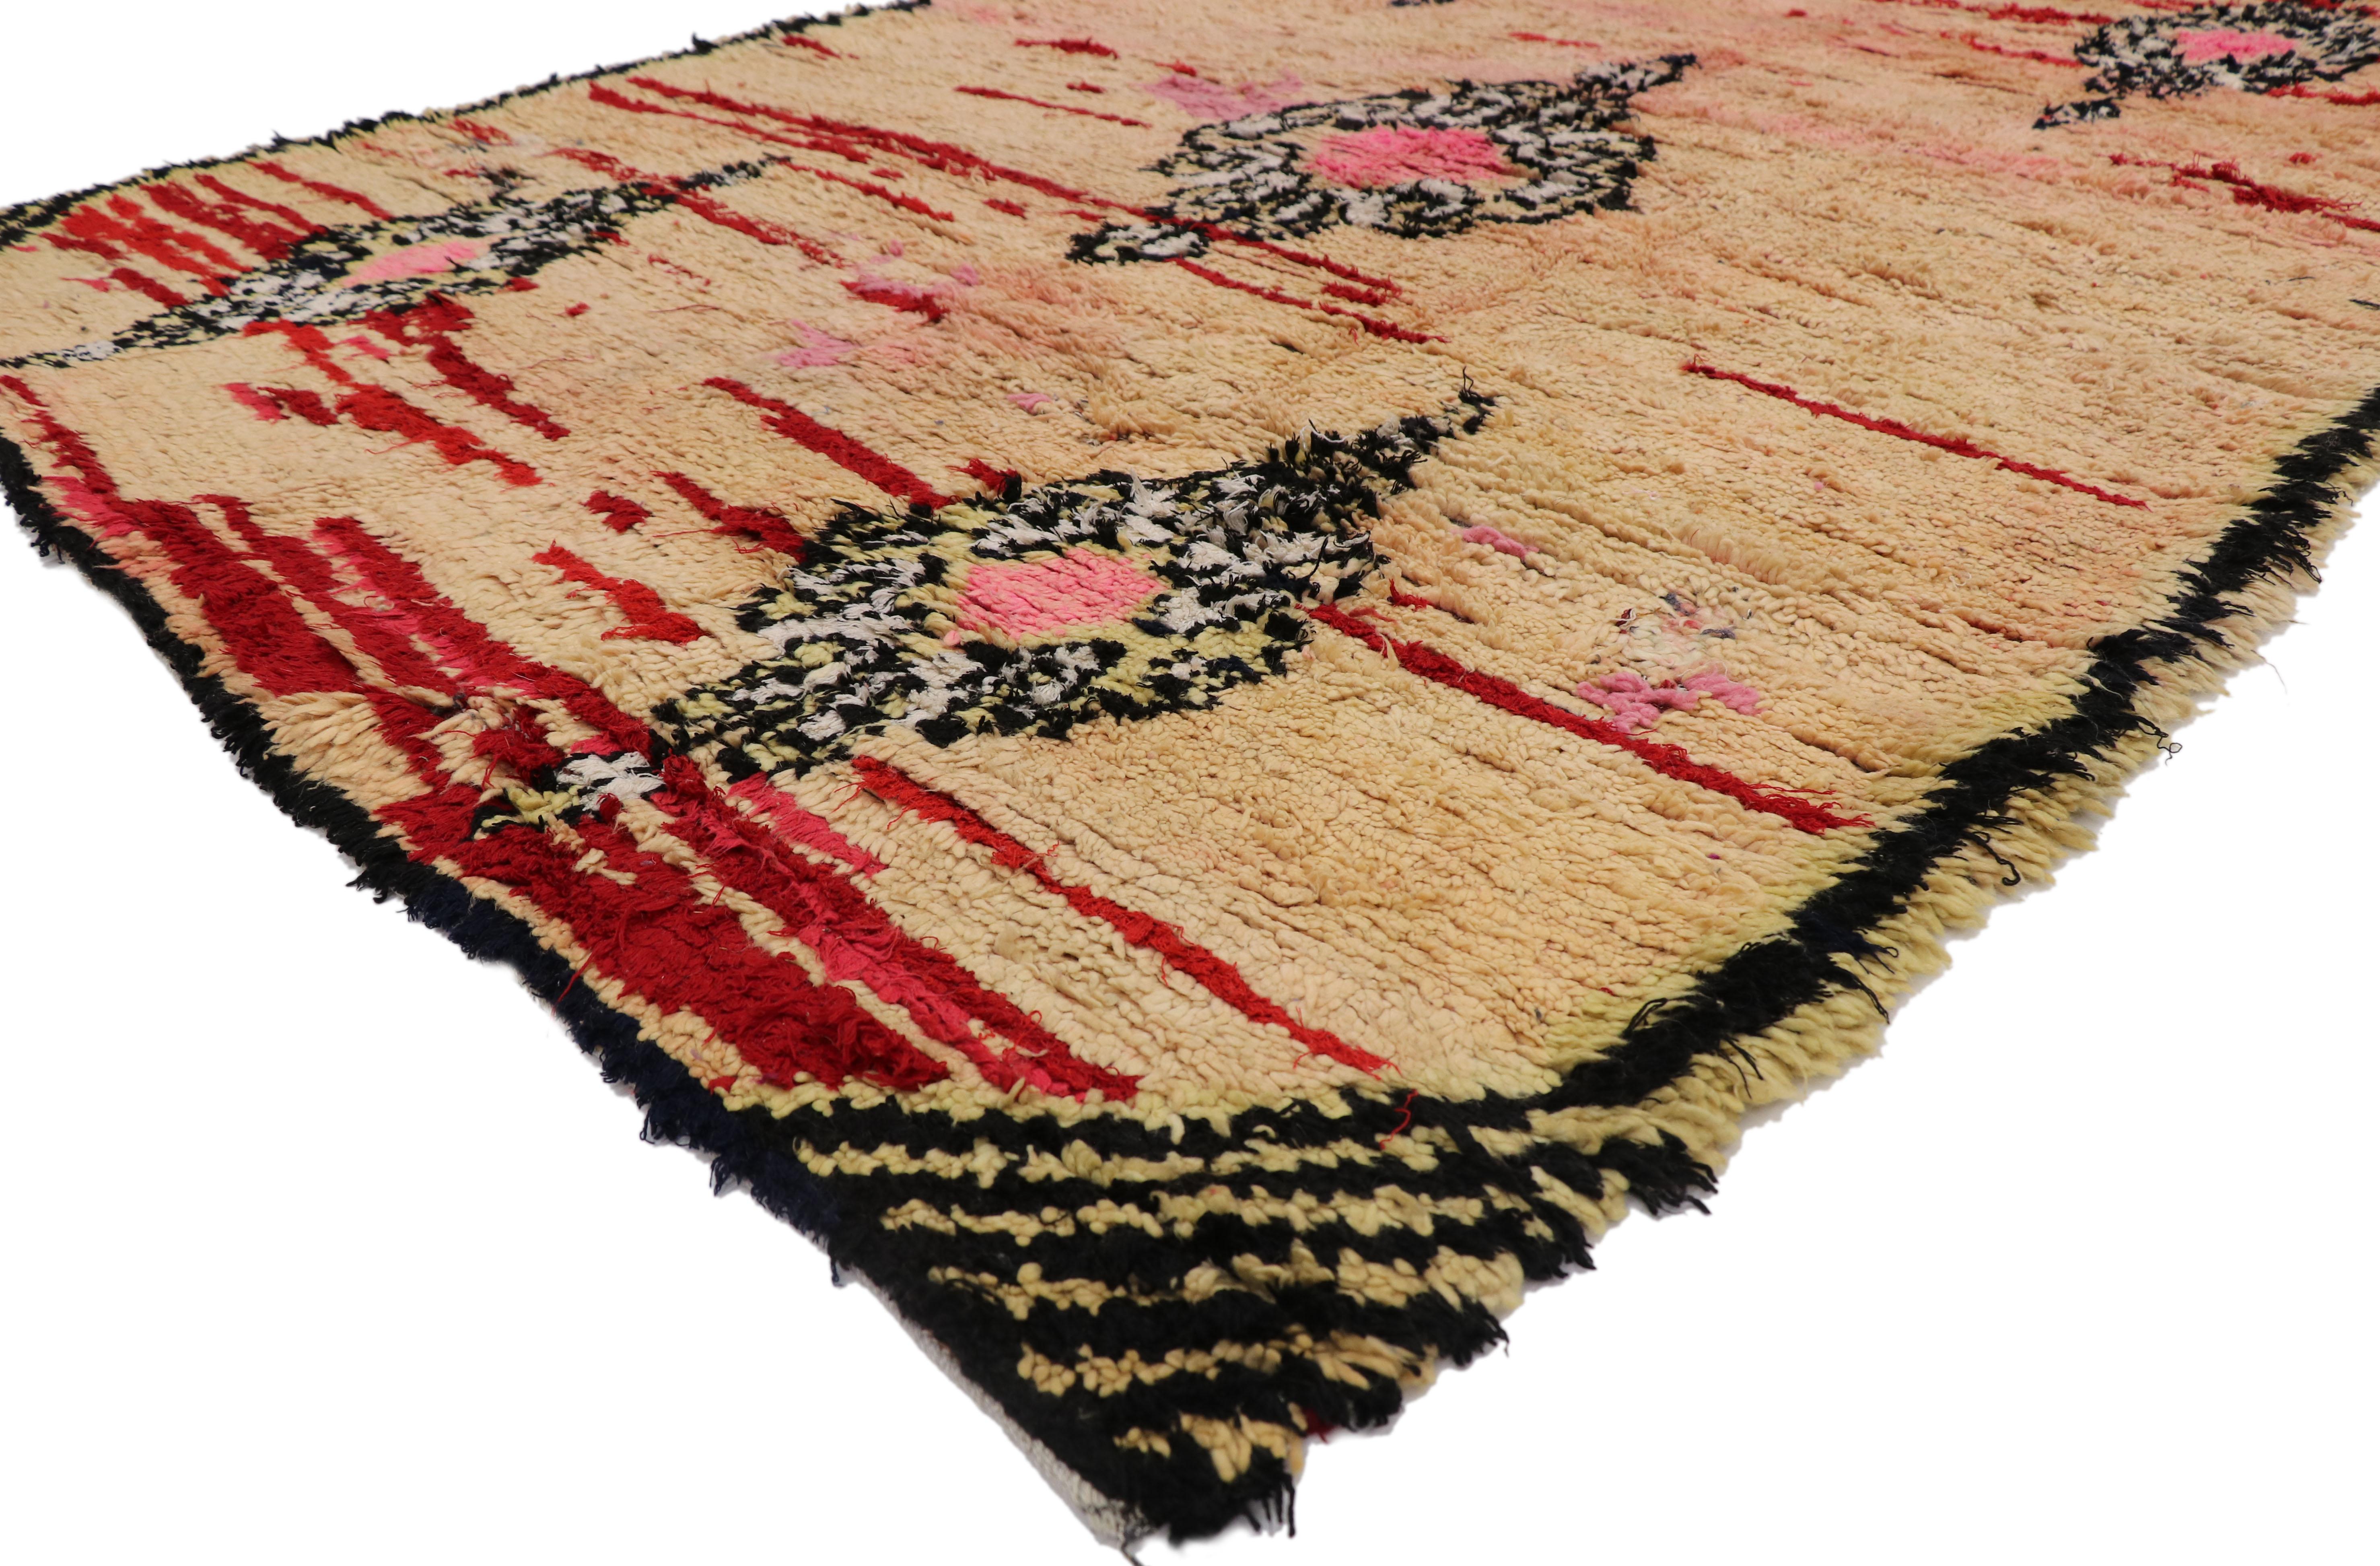 21422 Marokkanischer Vintage-Teppich, 06'03 x 08'04.
Wabi-Sabi trifft auf entspannten Luxus in diesem handgeknüpften marokkanischen Wollteppich im Vintage-Stil. Das eigentliche Tribal-Muster und die abgestuften Erdtöne, die in dieses Stück eingewebt